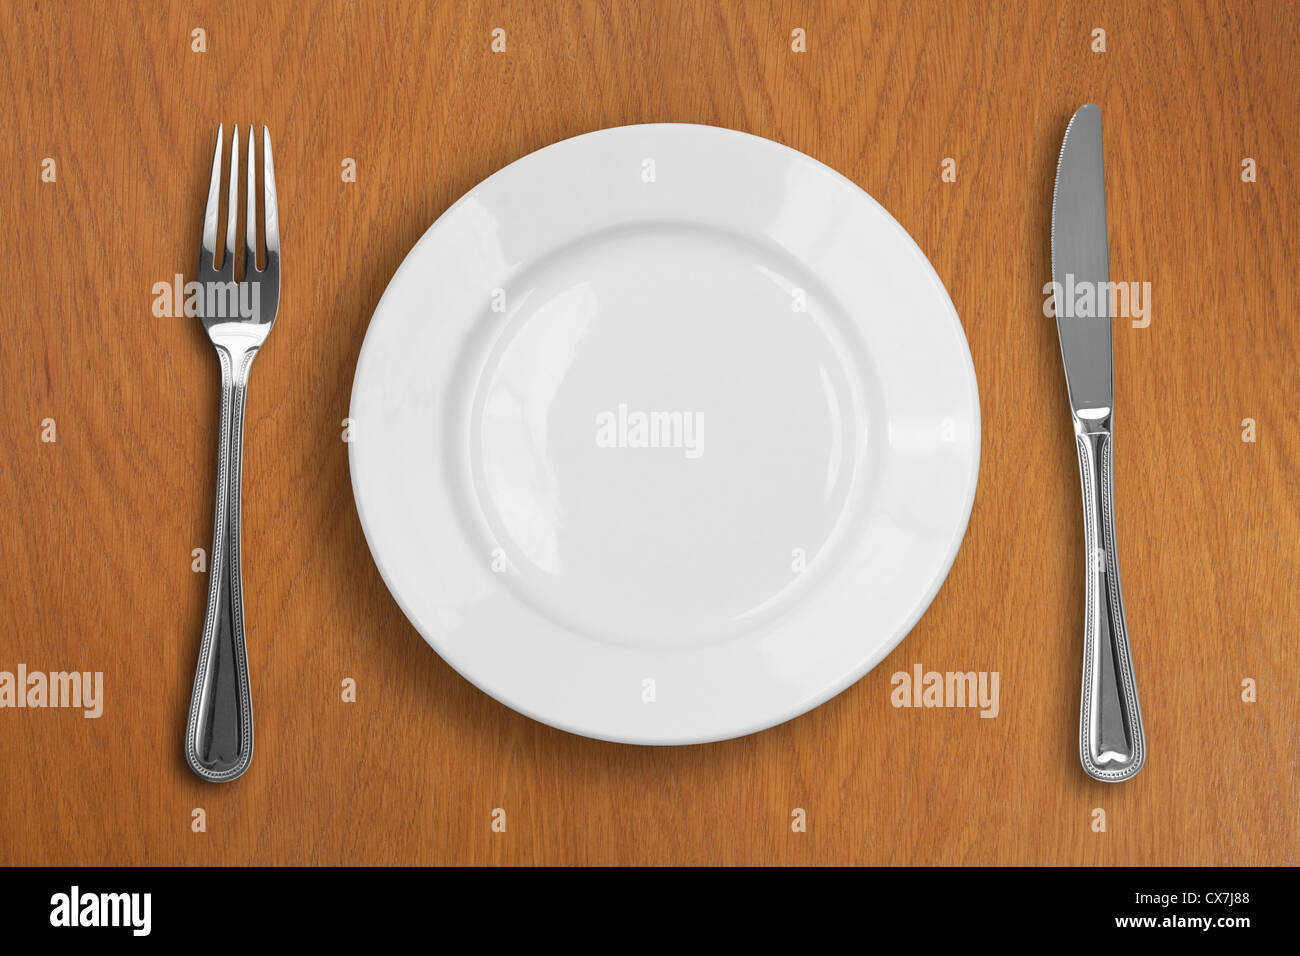 Plaque blanche ronde, couteau et fourchette sur table en bois Banque D'Images